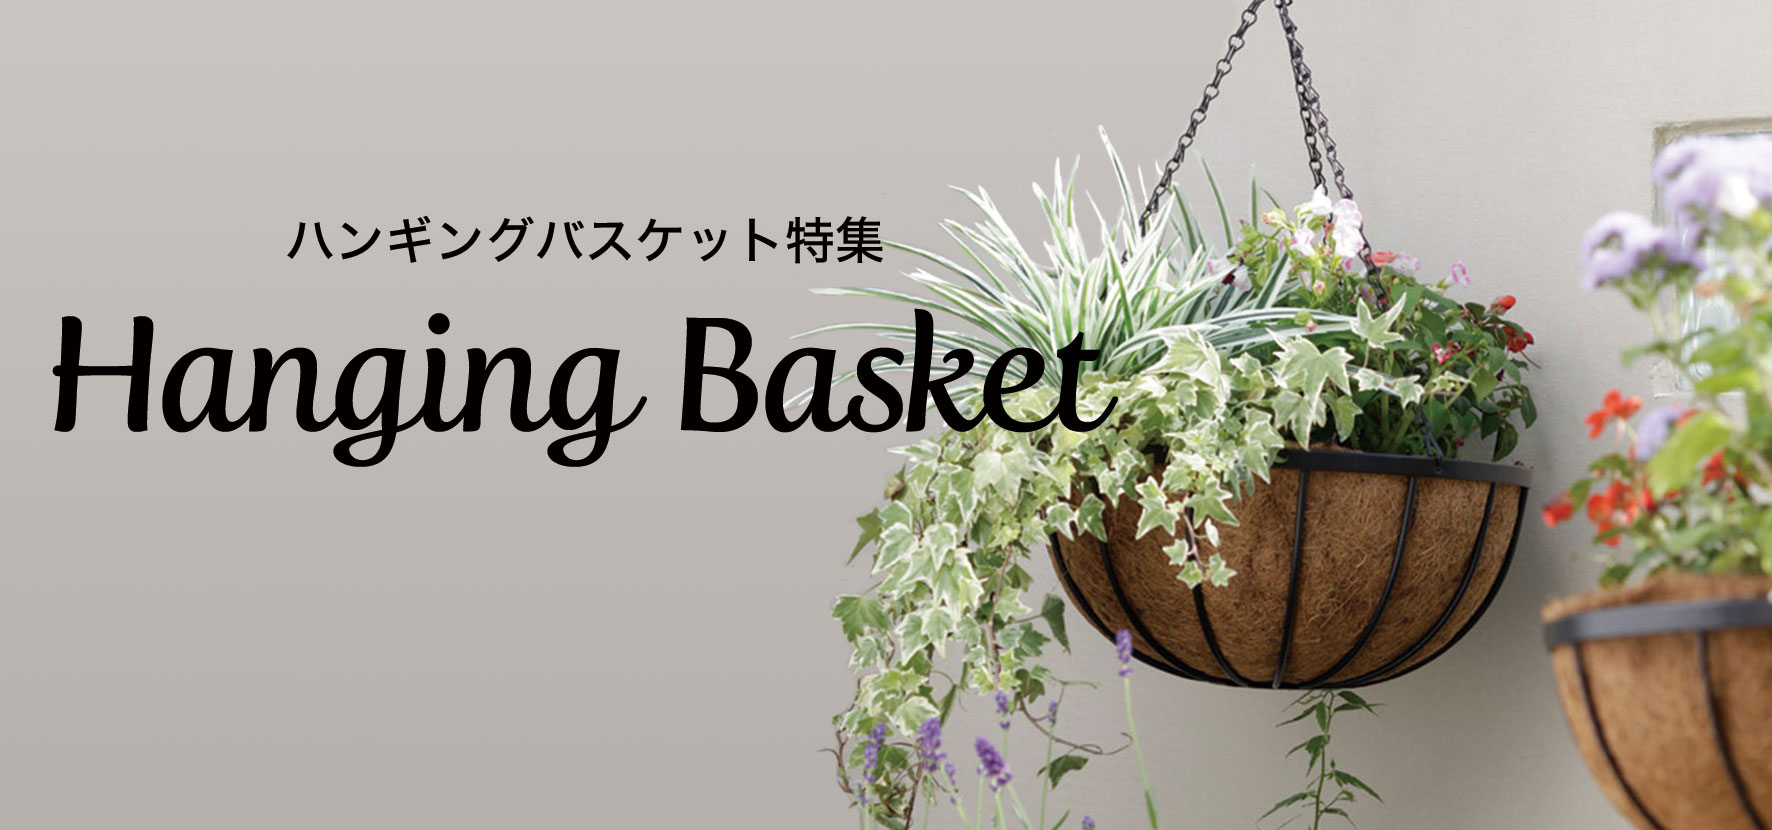 ペチュニアで作るハンギングバスケットの寄せ植え 寄せ植え プランターで作る Chiroの四季彩寄せ植え